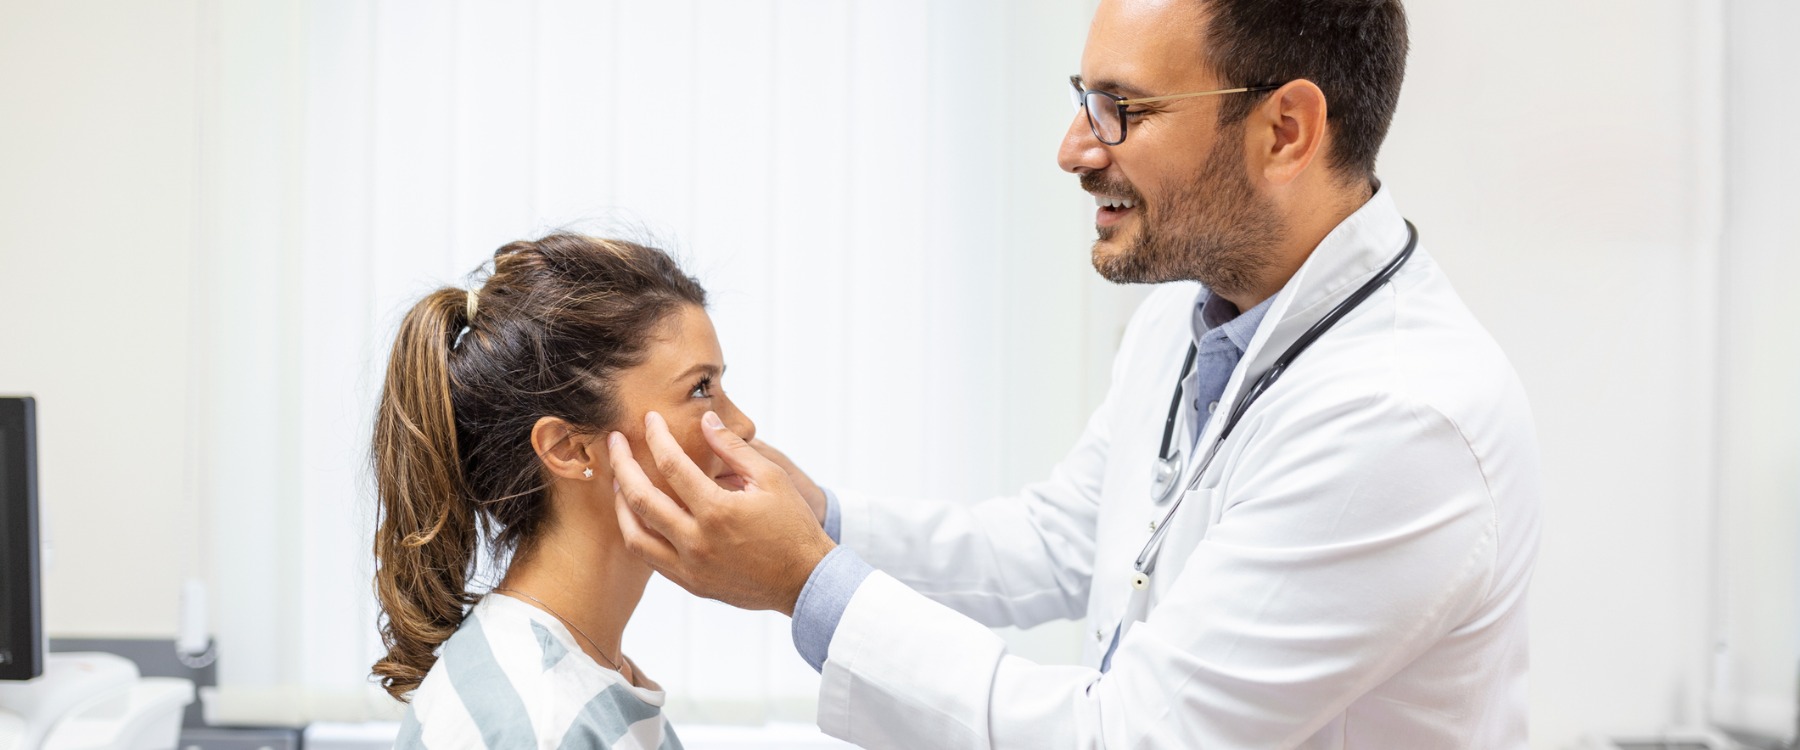 eye doctor examining woman's eyes